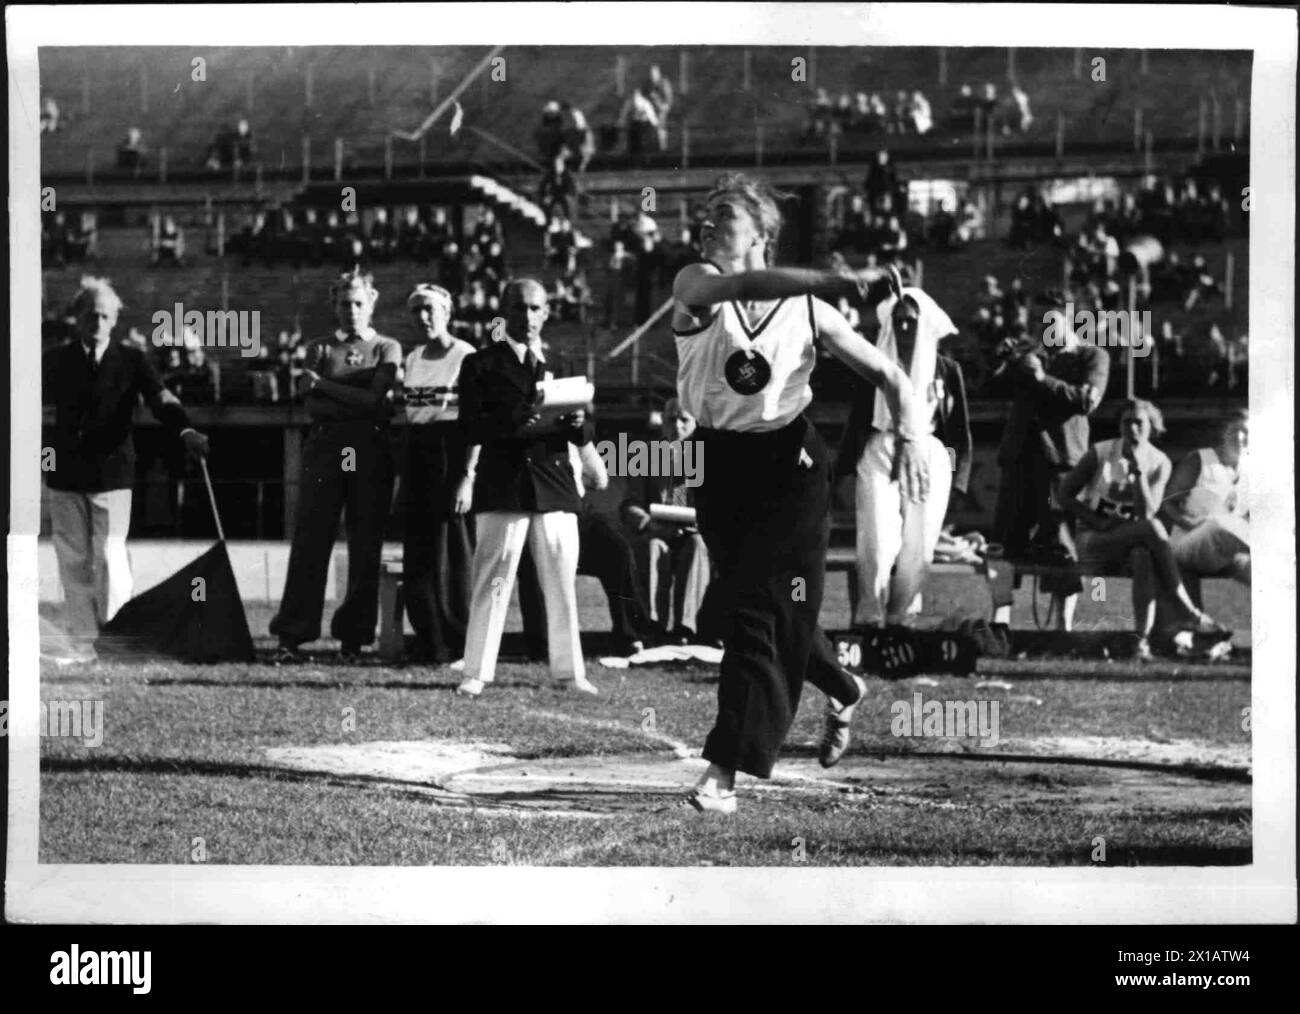 Leichtathletik-Europameisterschaften der Frauen in Wien, Gisela Mauermayer beim Diskuswurf., 18.09.1938 - 19380918 PD0010 - Rechteinfo: Rights Managed (RM) Stockfoto